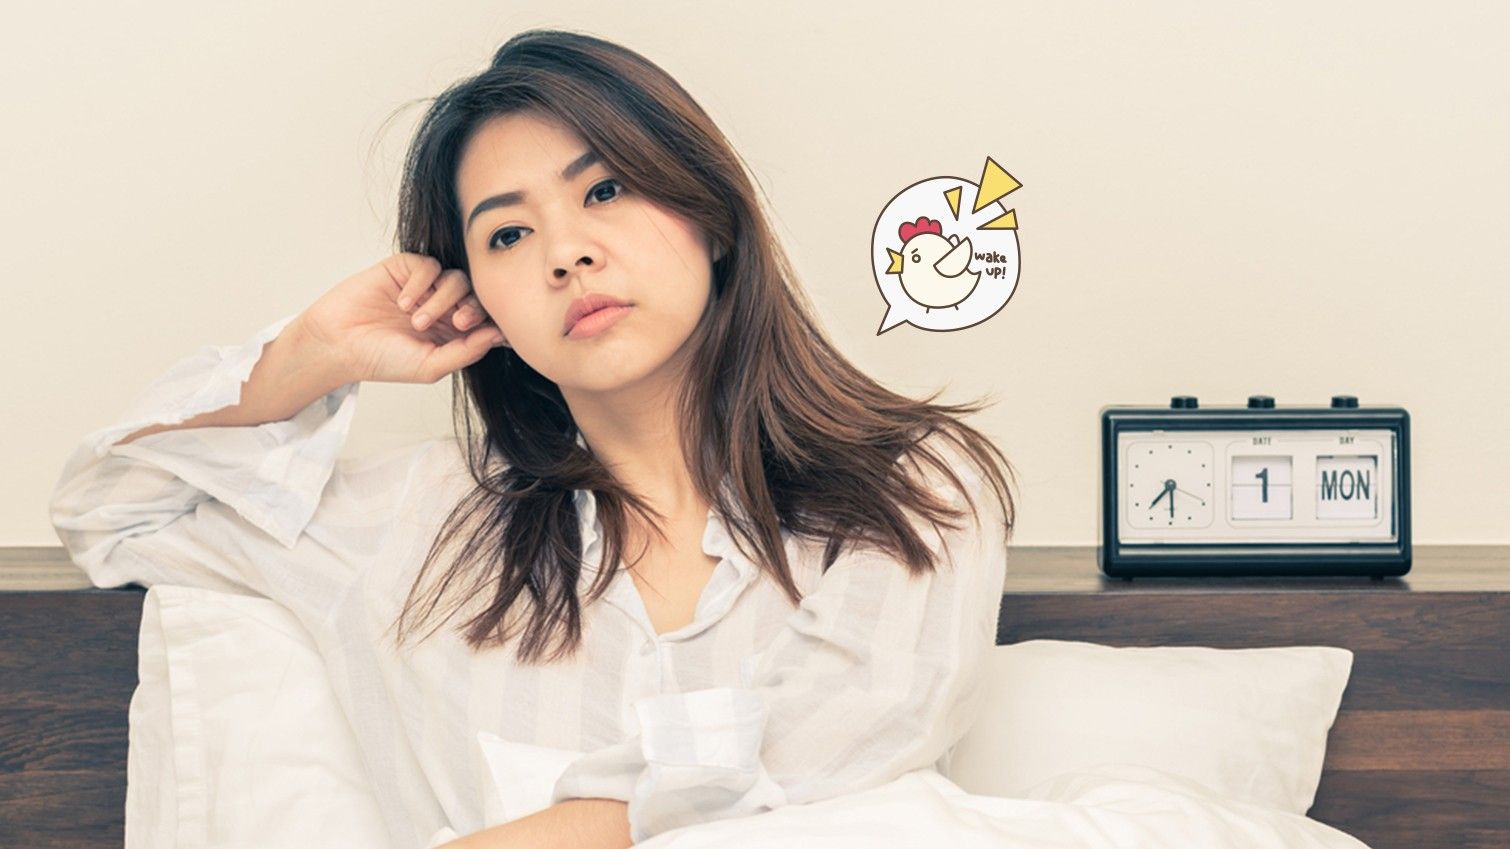 Susah Tidur? Simak 5 Tips untuk Mengatasi Insomnia